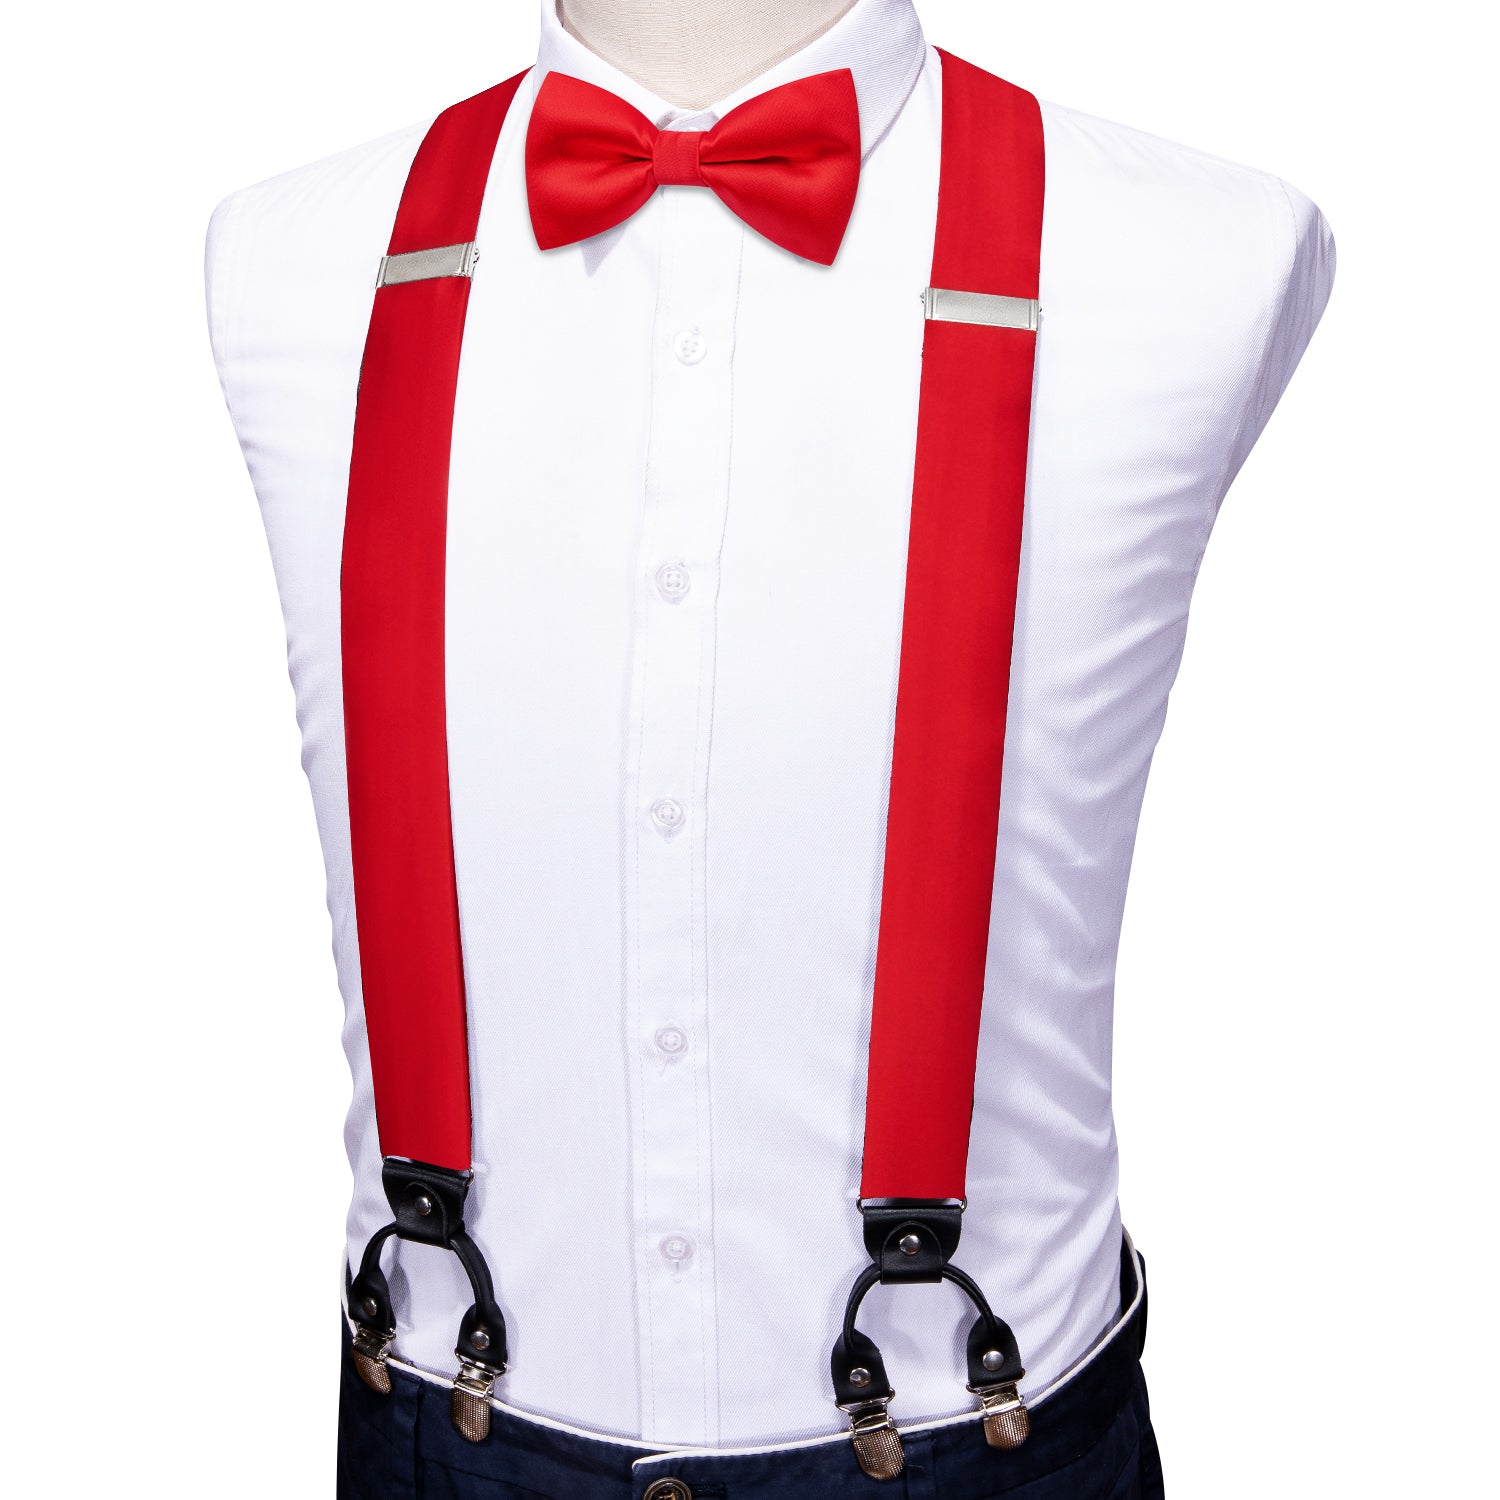 Red Solid Y Back Adjustable Bow Tie Suspenders Set